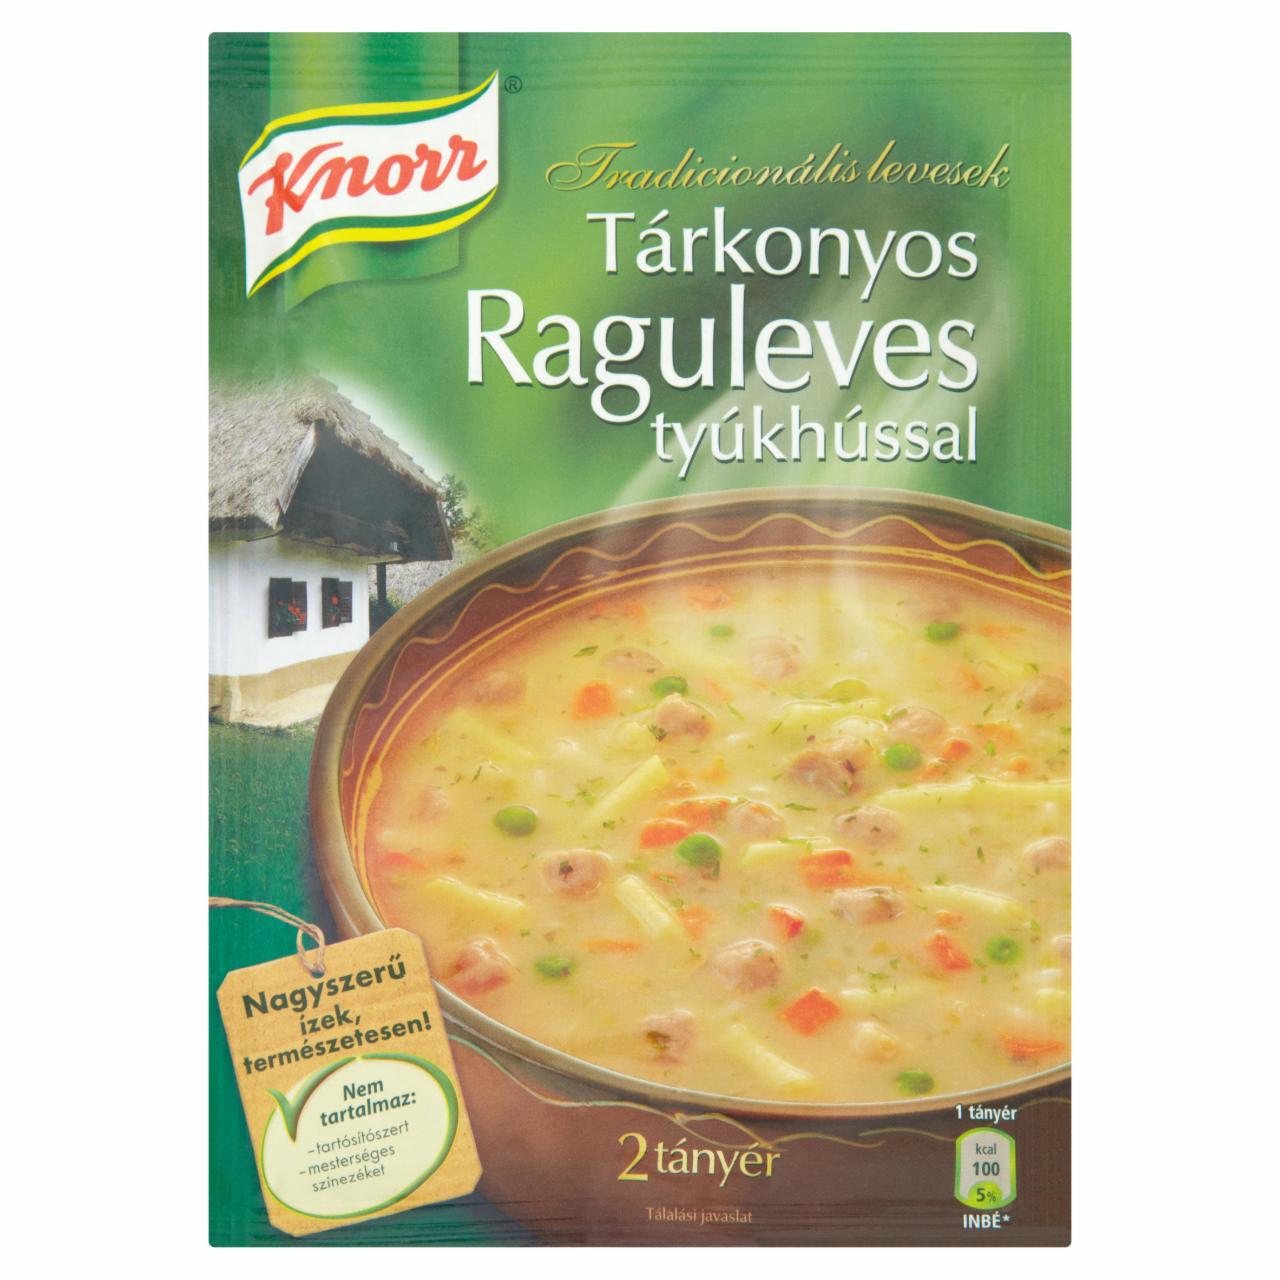 Képek - Knorr Tradicionális Levesek tárkonyos raguleves tyúkhússal 52 g